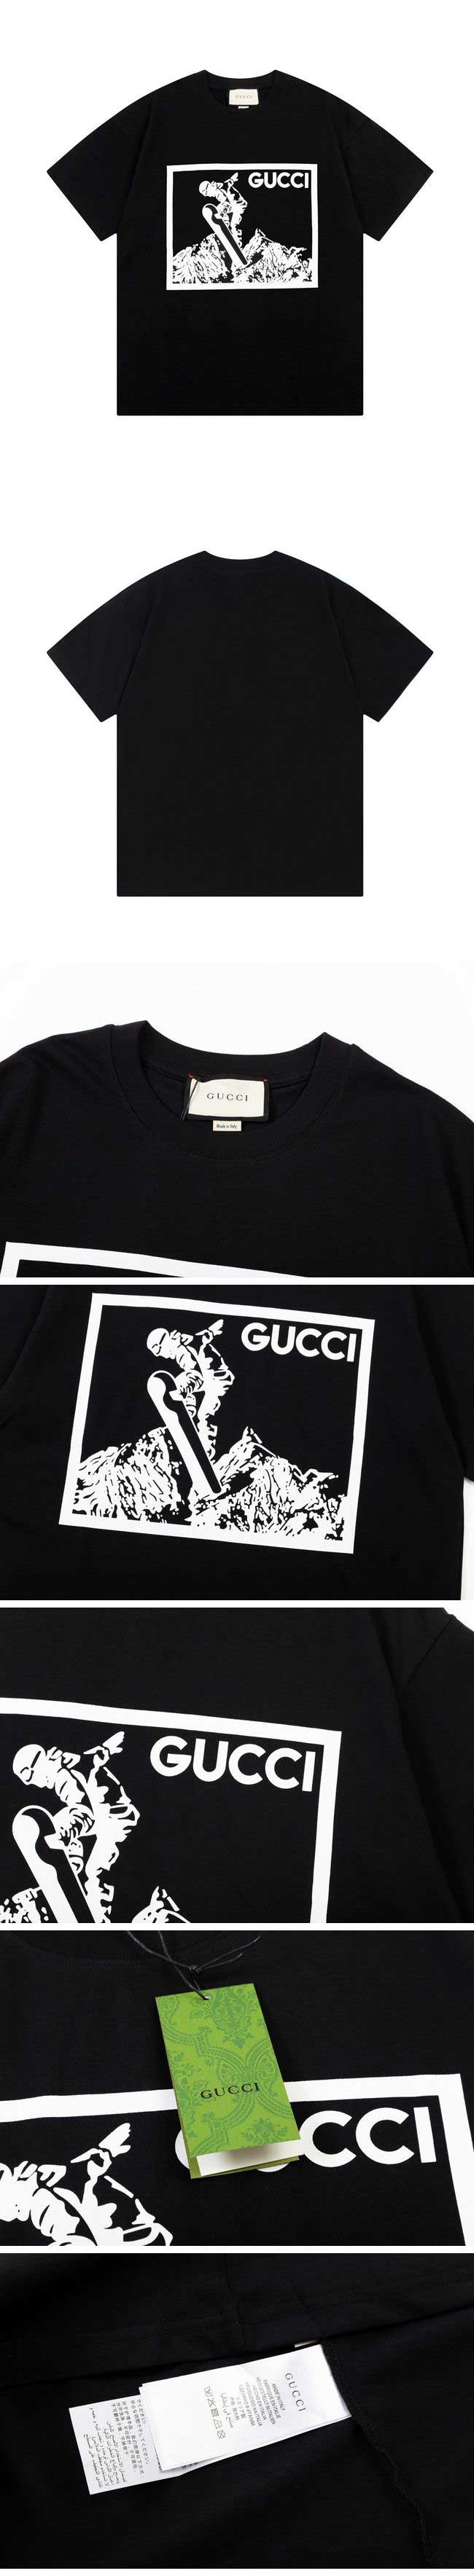 Gucci Snow Board Print Tee グッチ スノーボード プリント Tシャツ ブラック